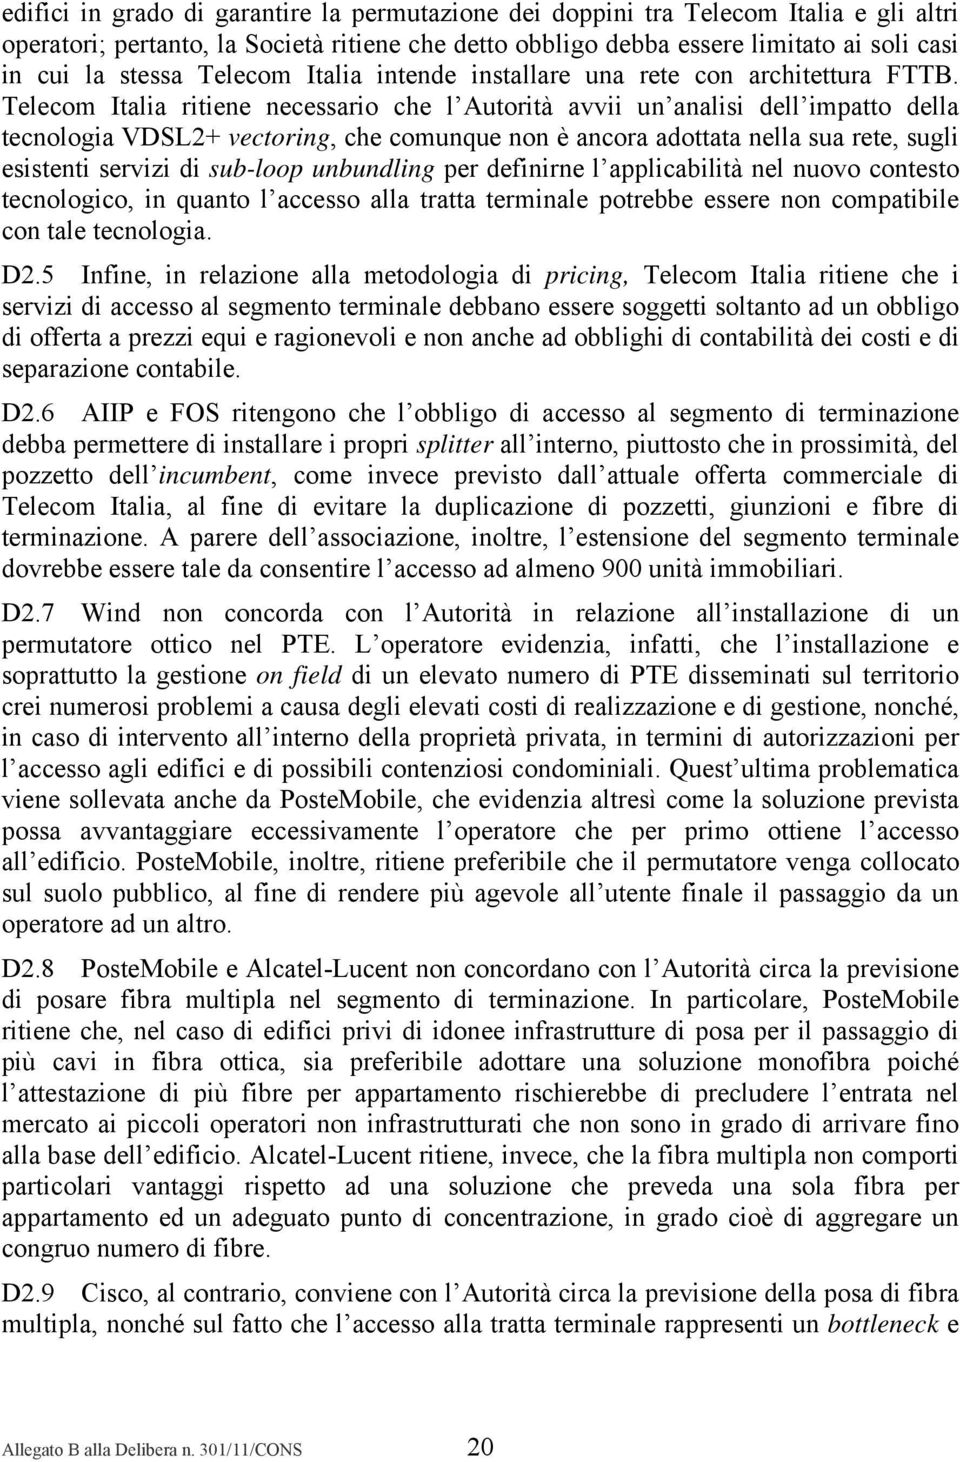 Telecom Italia ritiene necessario che l Autorità avvii un analisi dell impatto della tecnologia VDSL2+ vectoring, che comunque non è ancora adottata nella sua rete, sugli esistenti servizi di